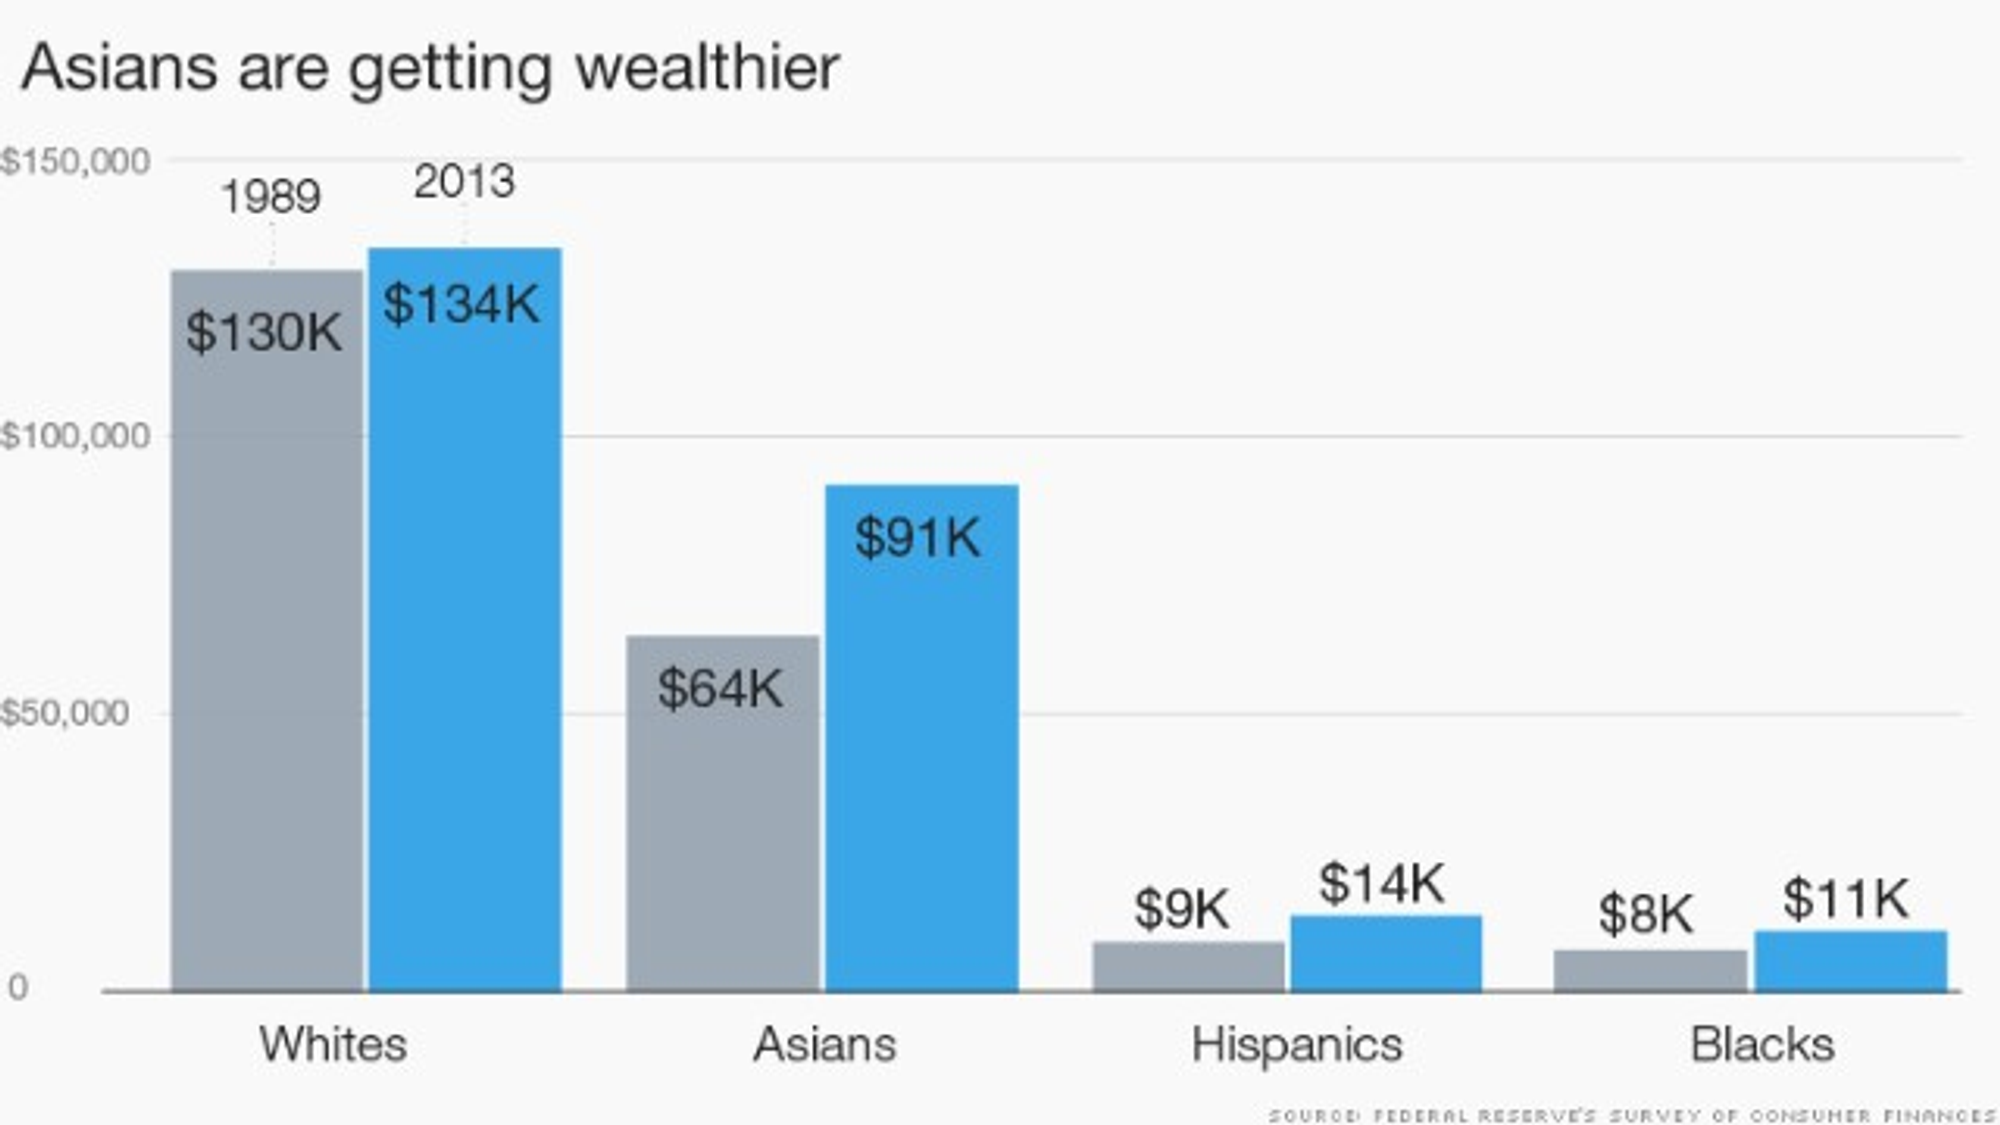 https://money.cnn.com/2015/02/26/news/economy/asians-wealth-whites/